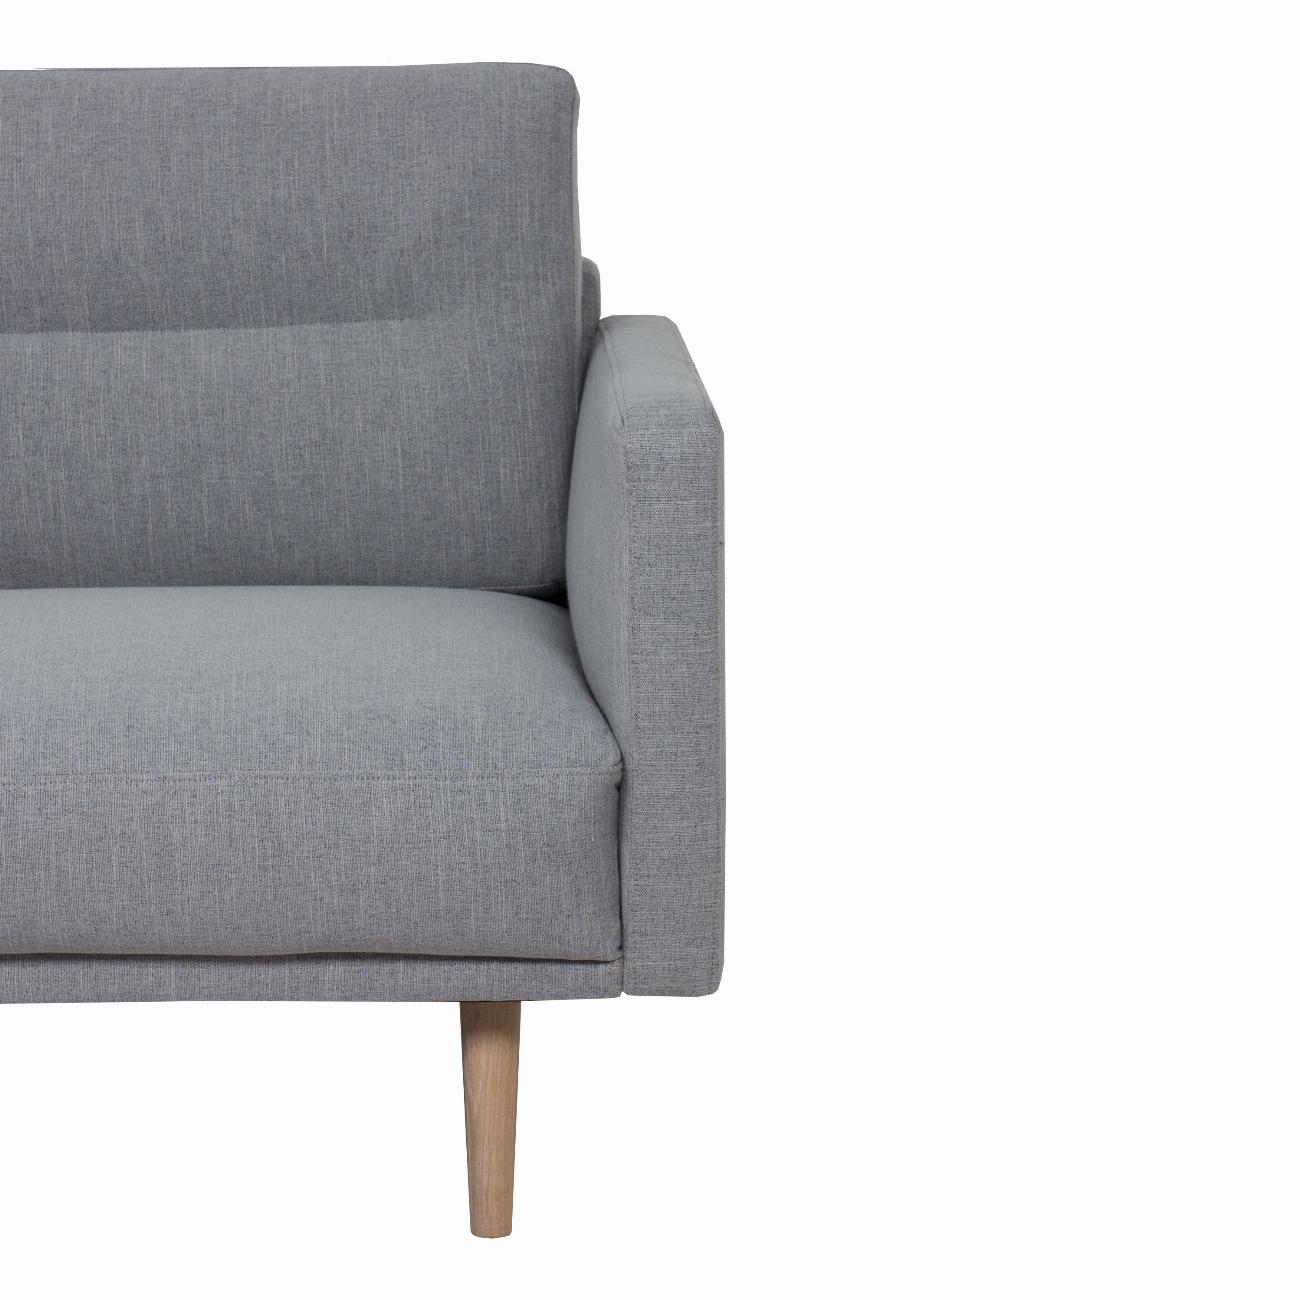 Larvik Chaiselongue Sofa  (LH) - Grey, Oak Legs